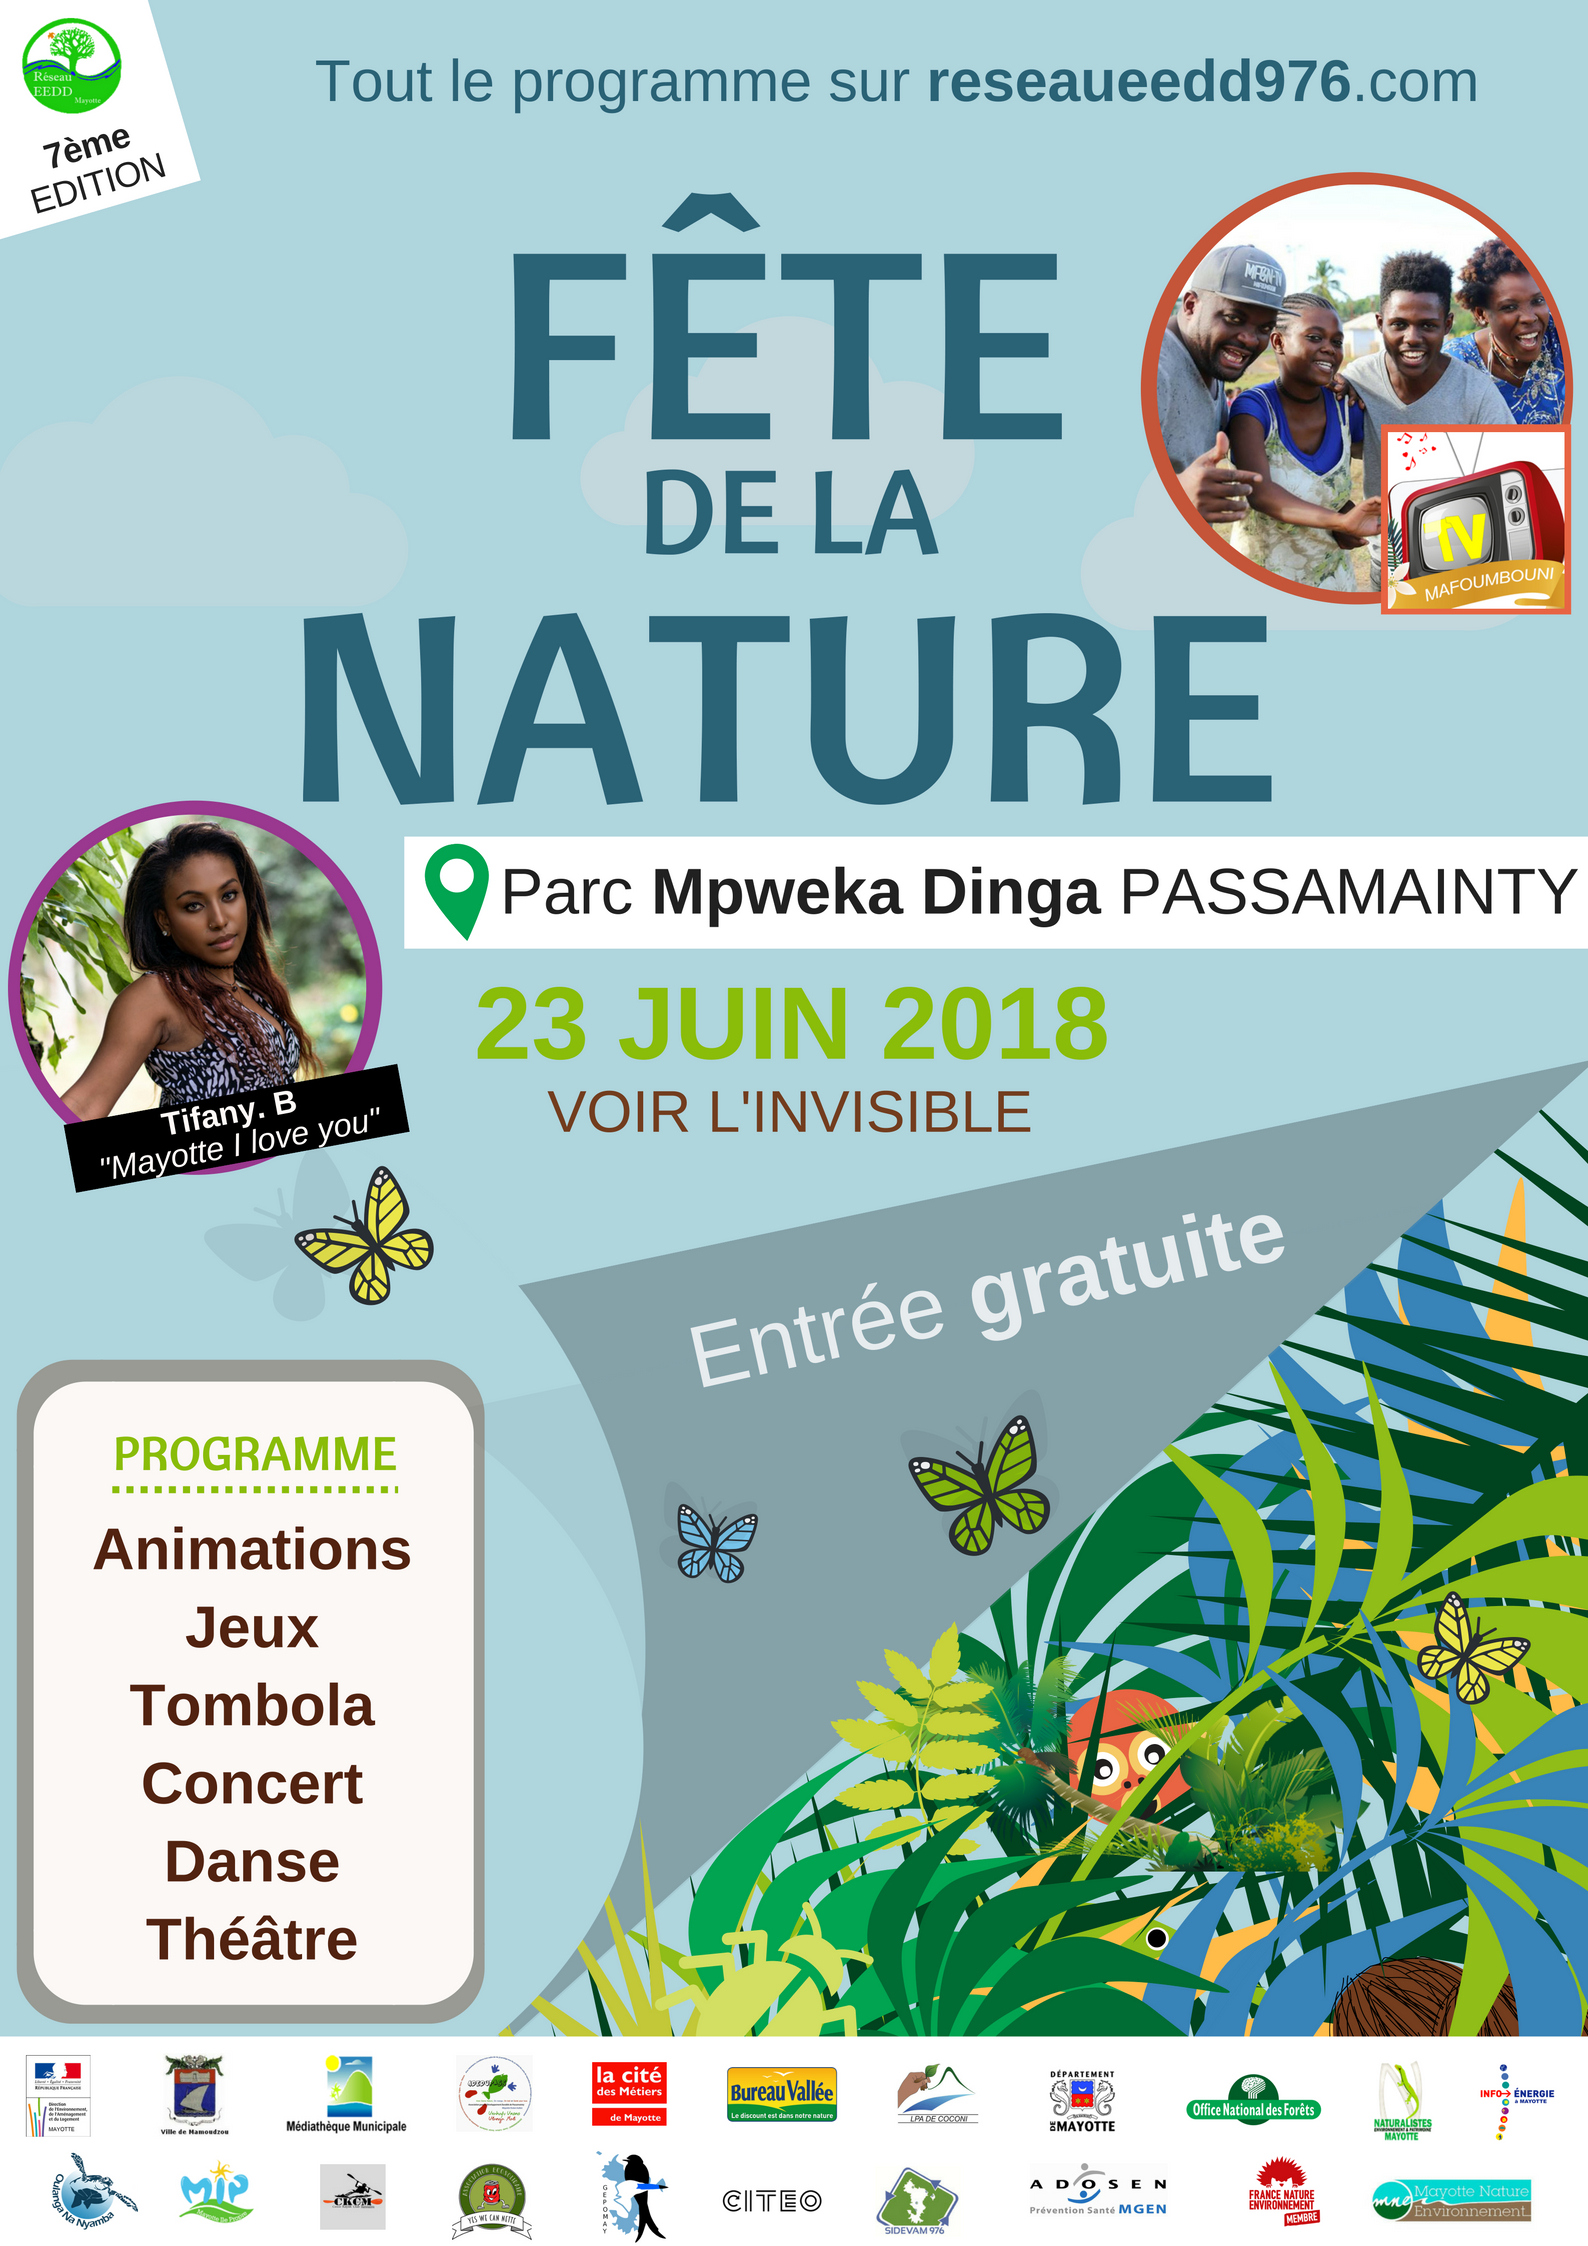 Fête de la nature le 23 juin 2018à Mayotte